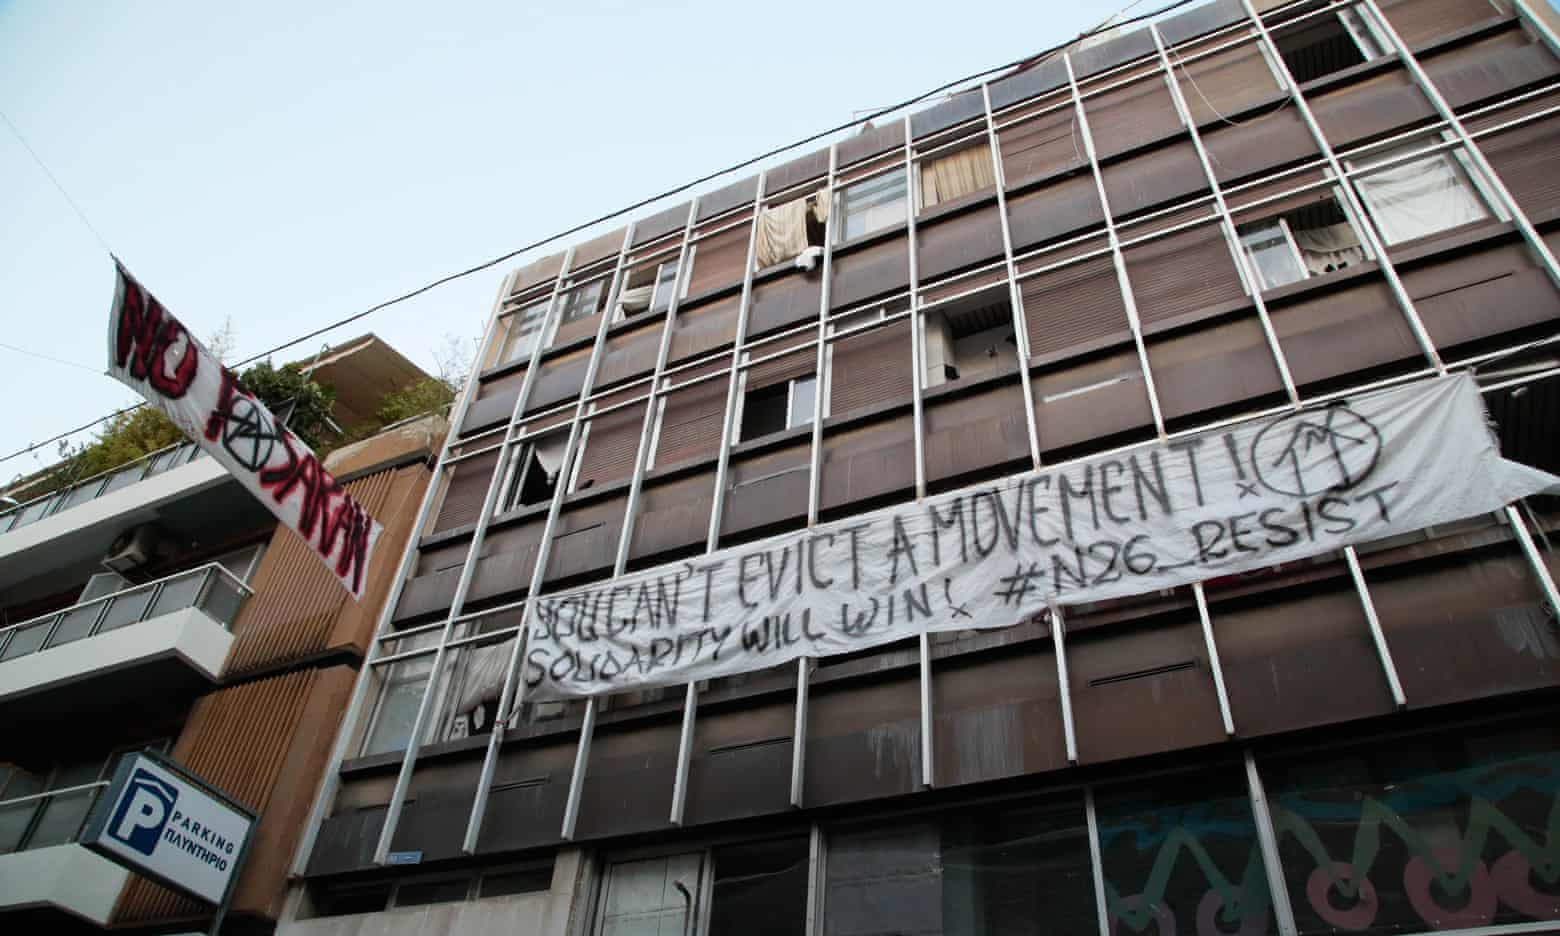 El Barrio Rebelde Y Solidario De Exarchia Atenas Bajo